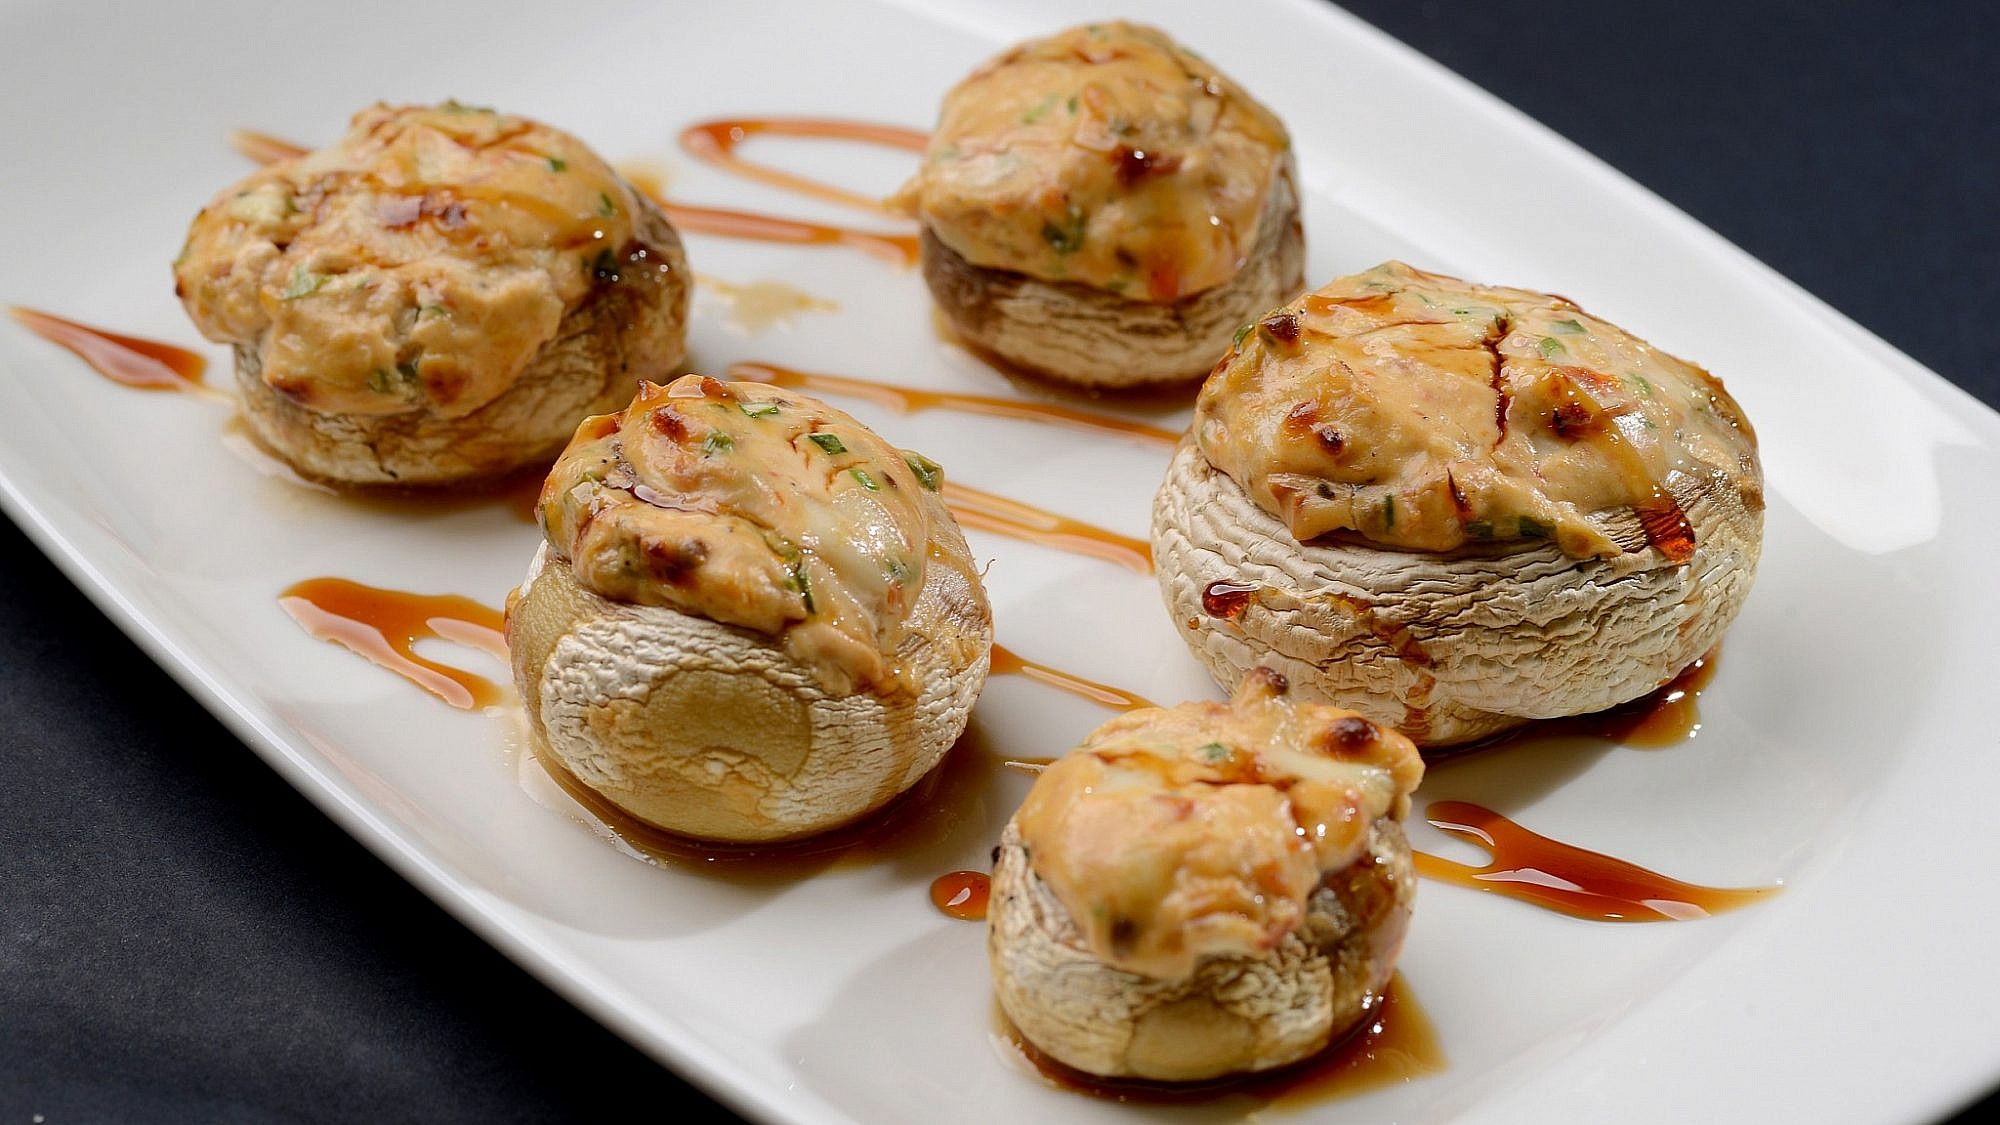 פטריות בתנור במילוי גבינות של שף רם ענתבי. צילום: רן בירן